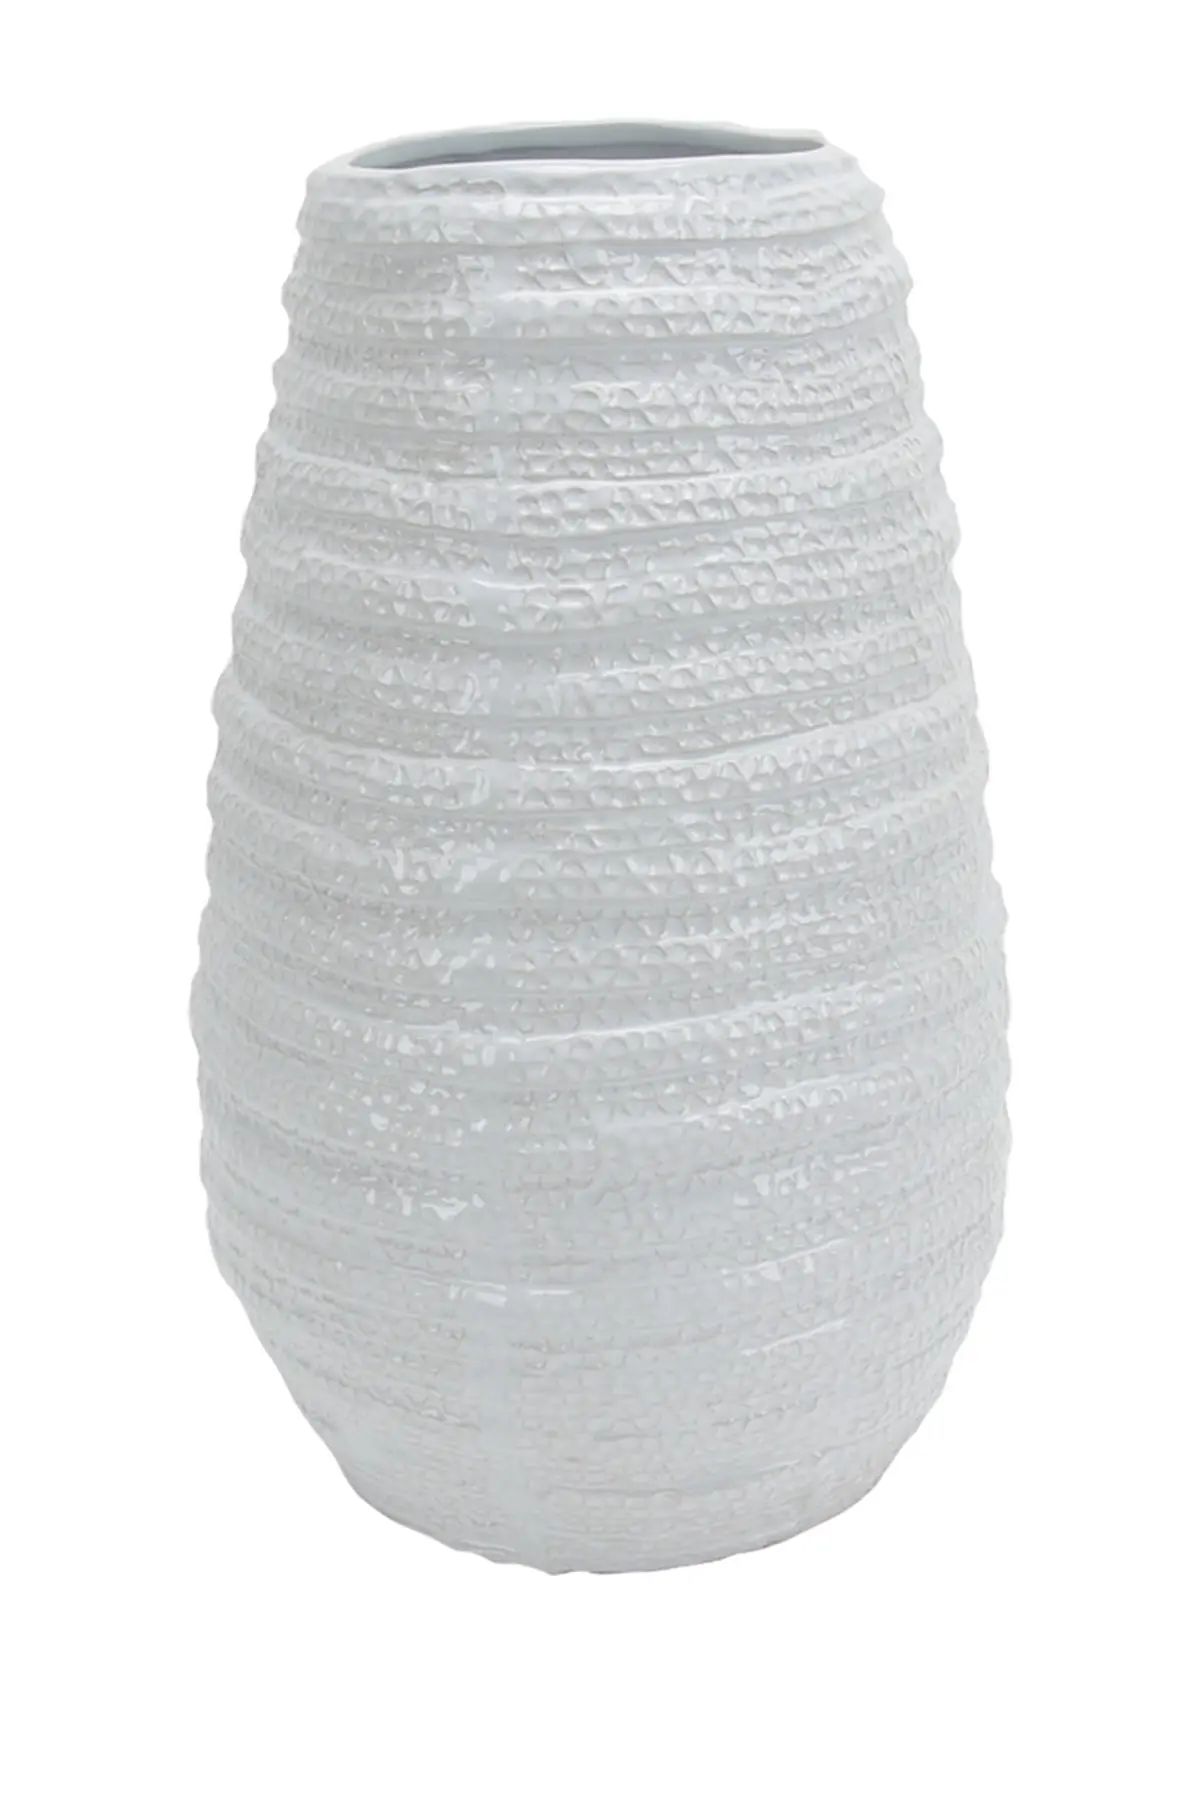 SAGEBROOK HOME Textured White Ceramic Vase at Nordstrom Rack | Nordstrom Rack